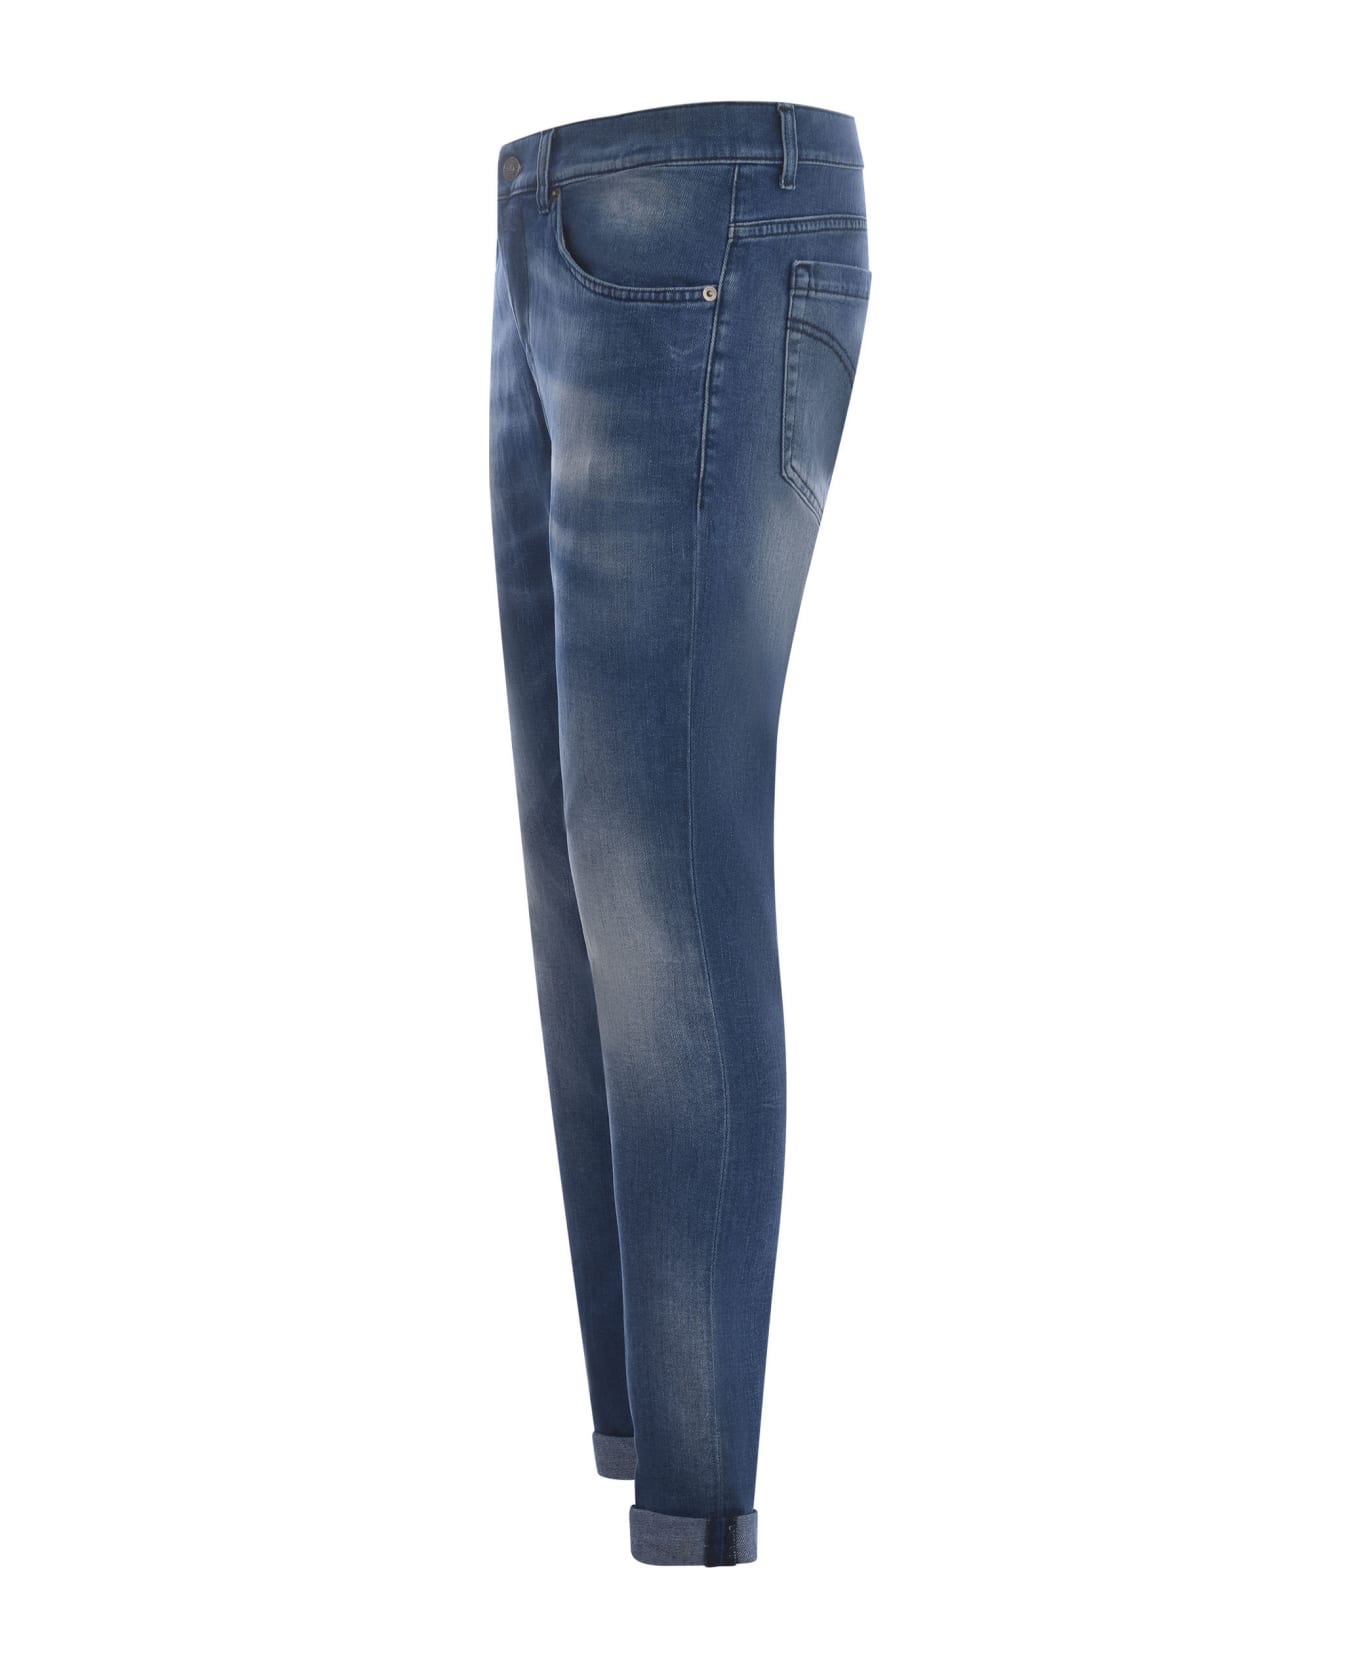 Dondup George Skinny Jeans In Medium Blue Stretch Denim - Blue